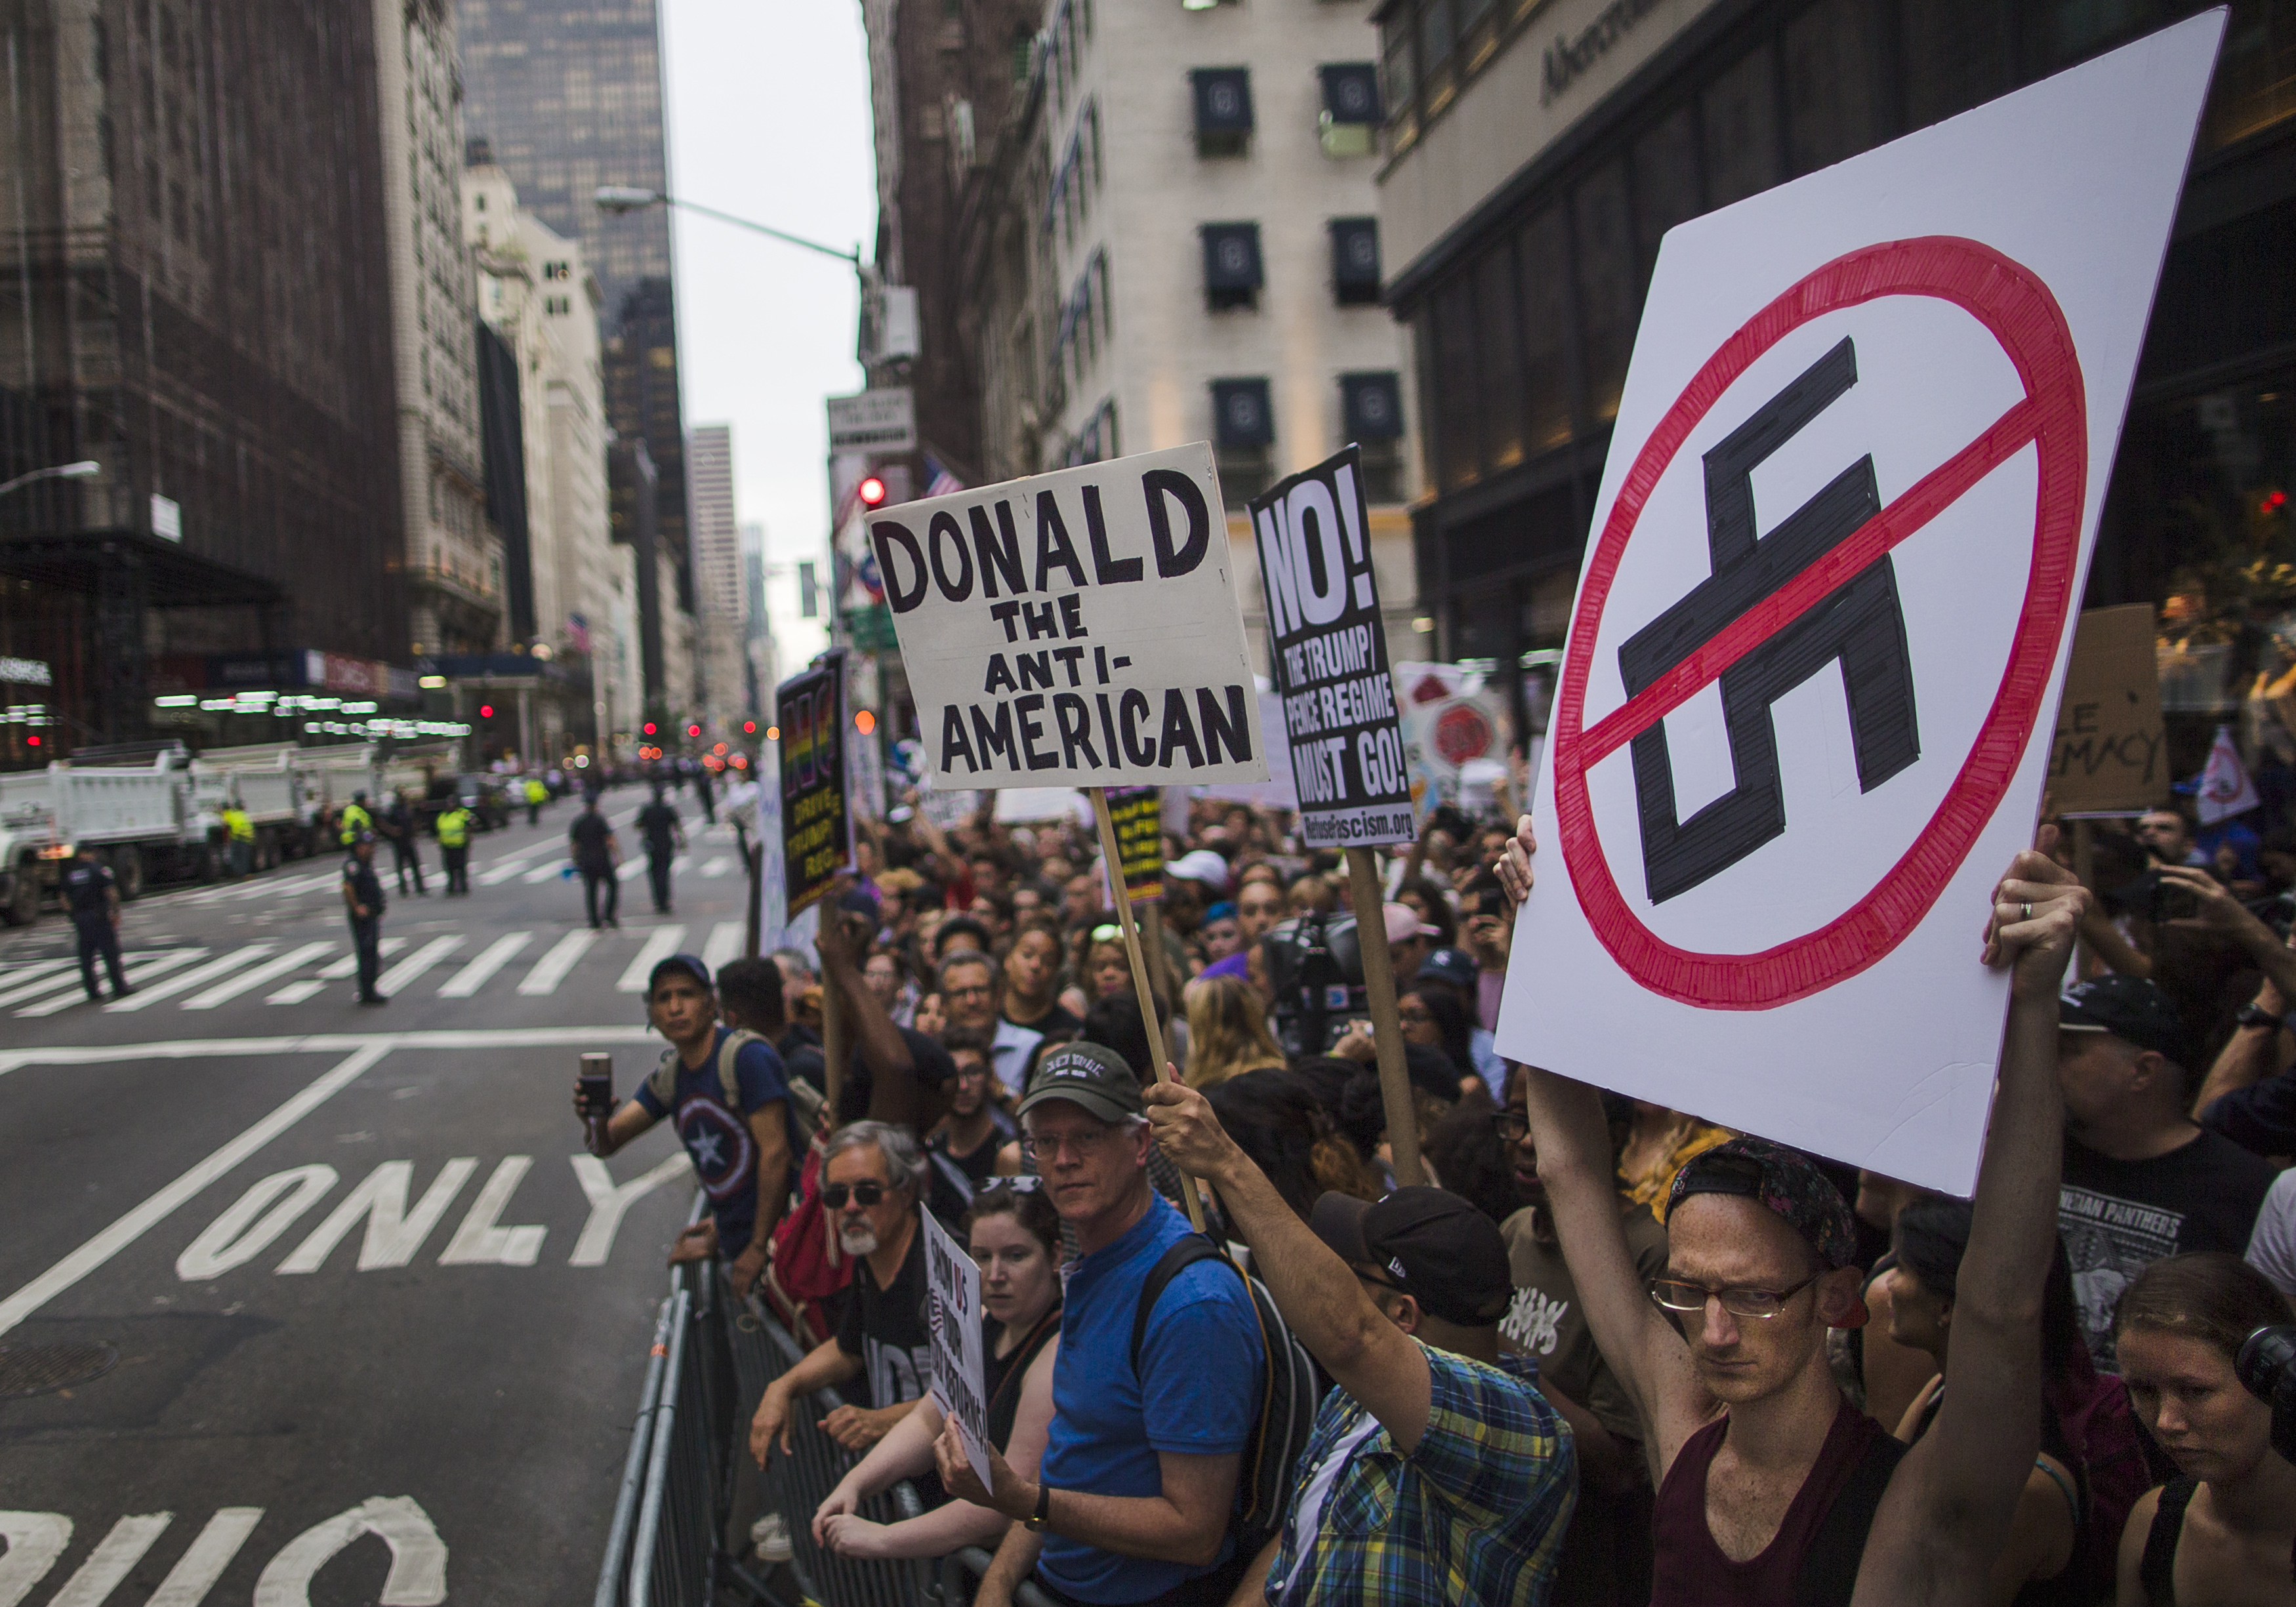 Протестиращи очакват президента пред Тръмп тауър в Ню Йорк, недоволни от реакцията му по повод неонацистко шествие